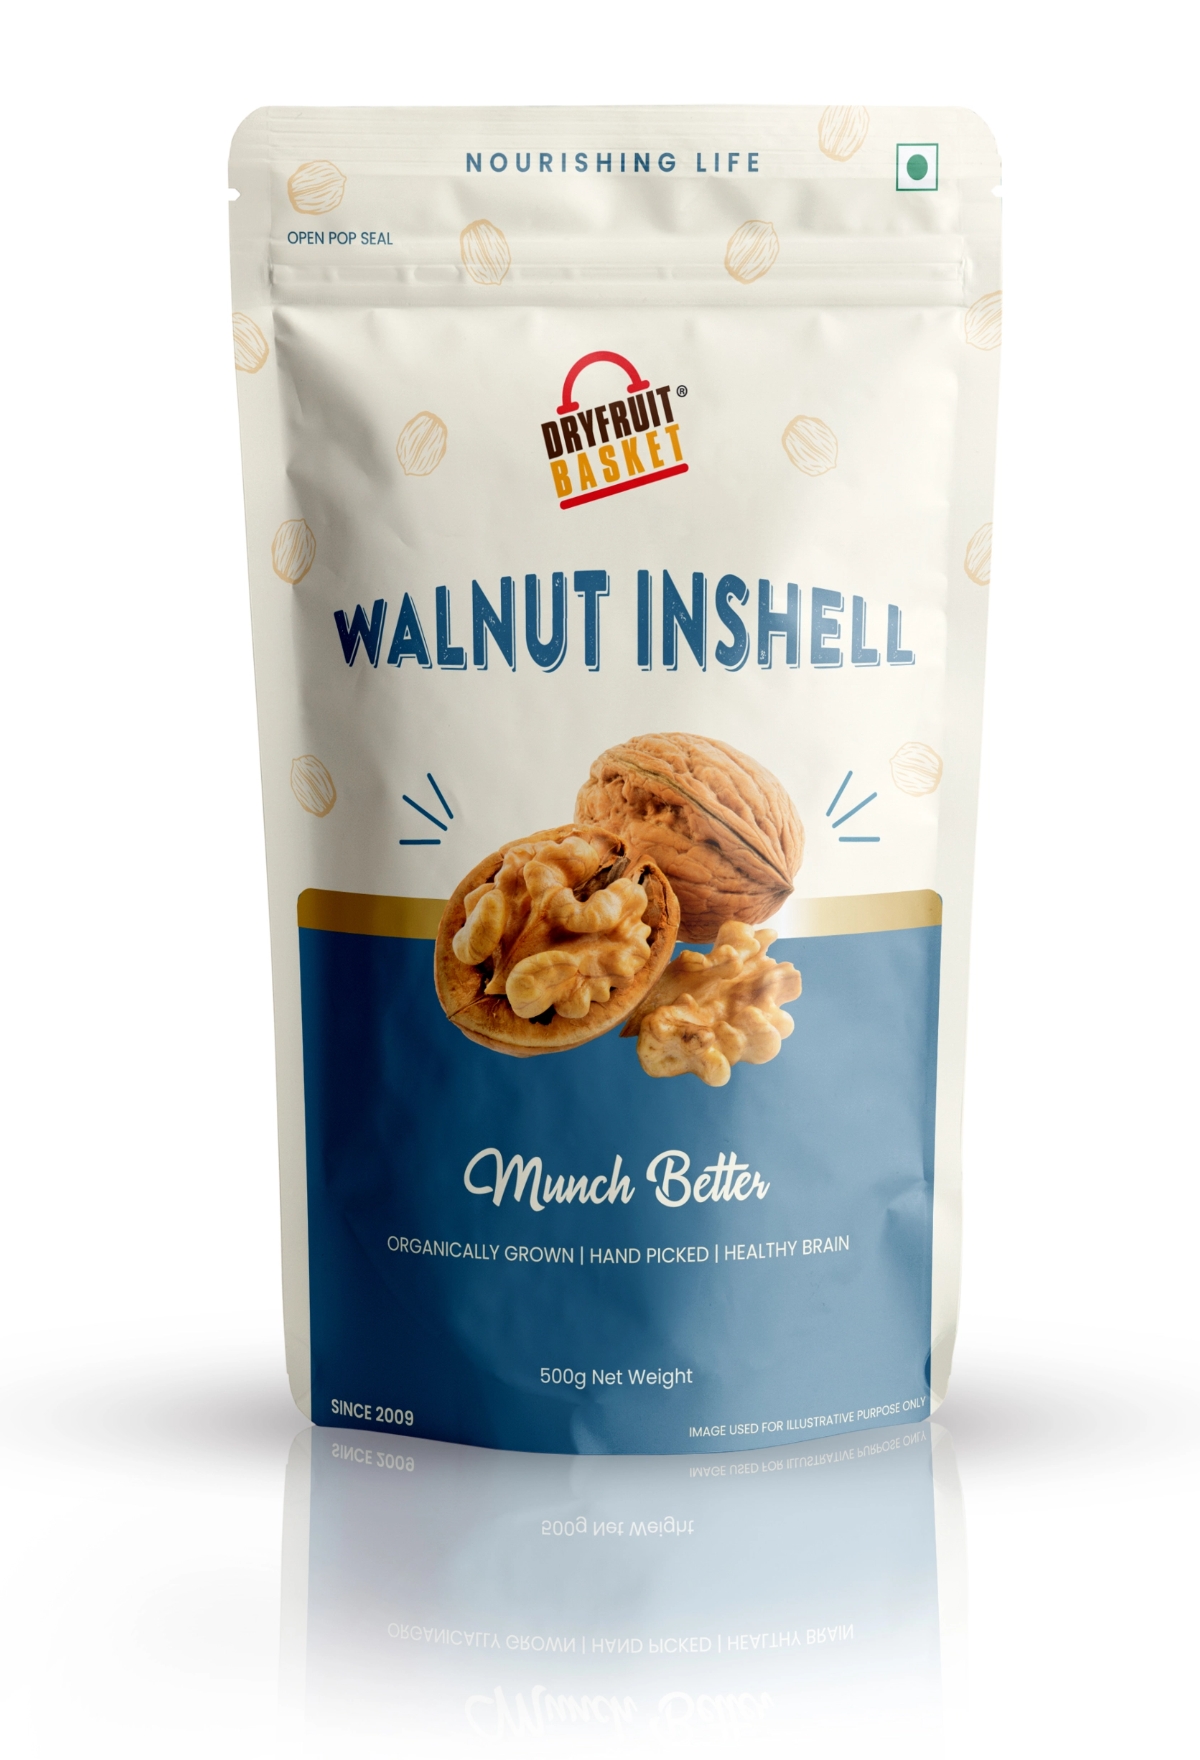 Buy Walnuts Inshell Online